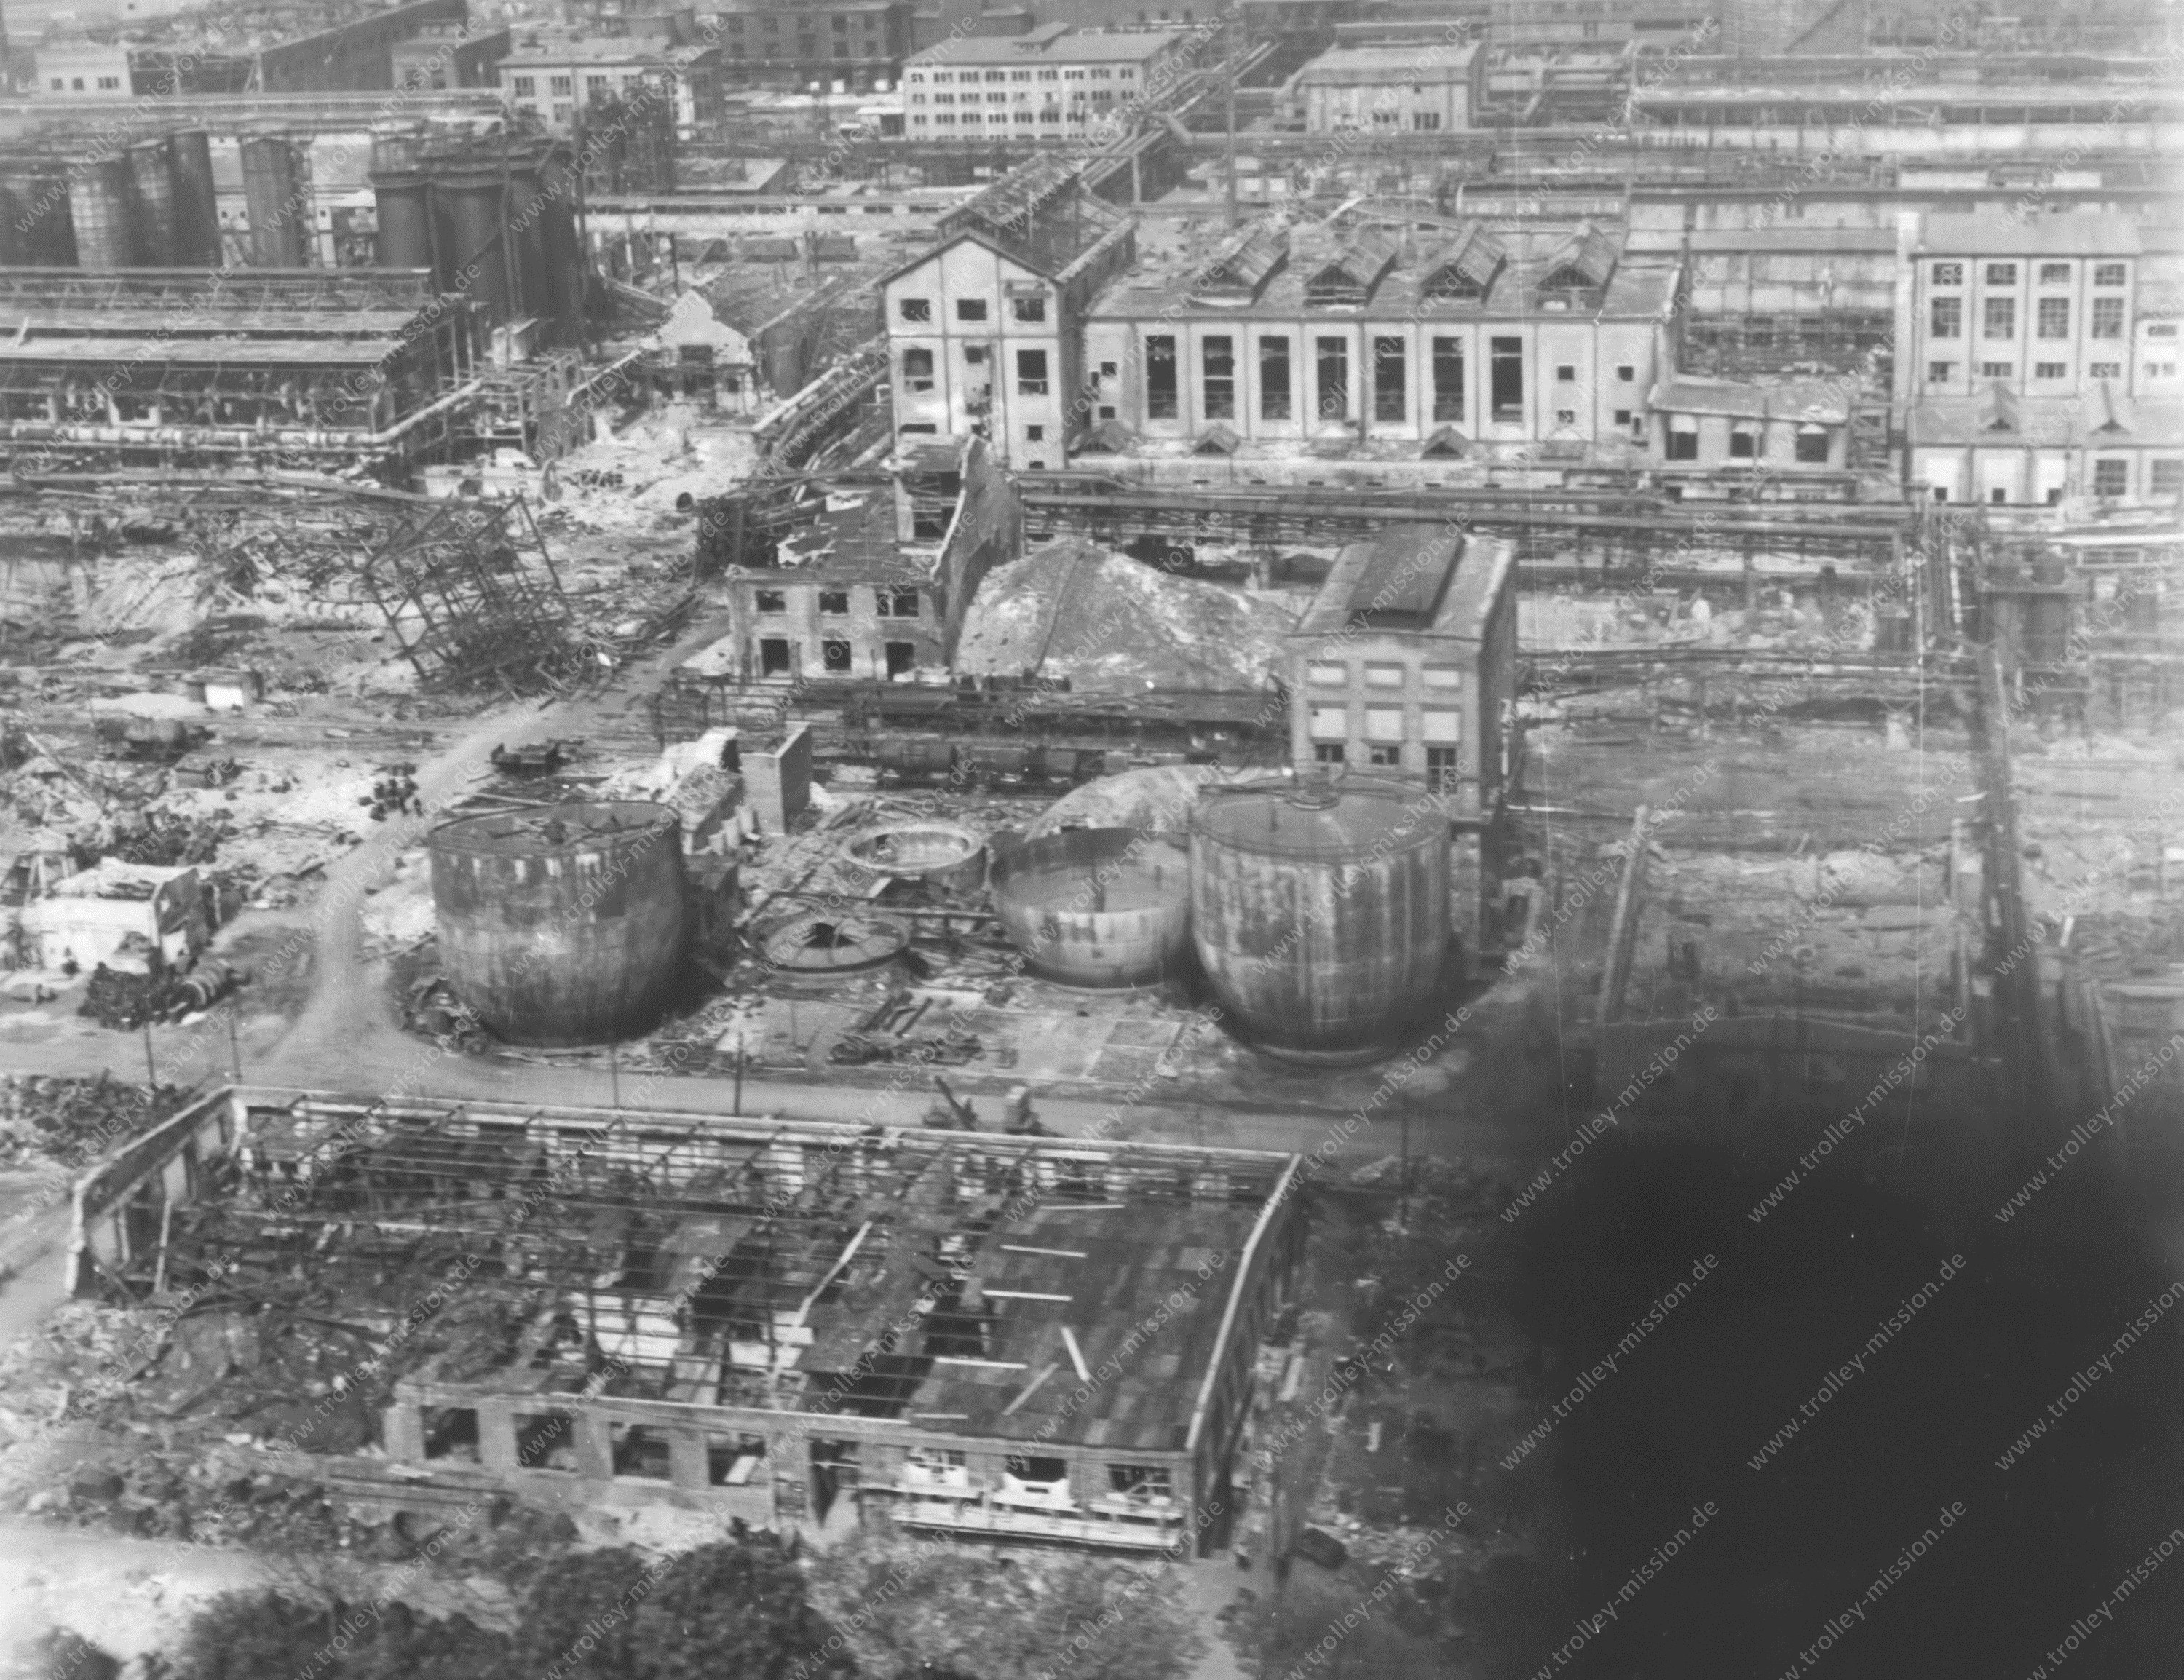 BASF IG Farbenindustrie - Werk Rhein - Zweiter Weltkrieg 1945